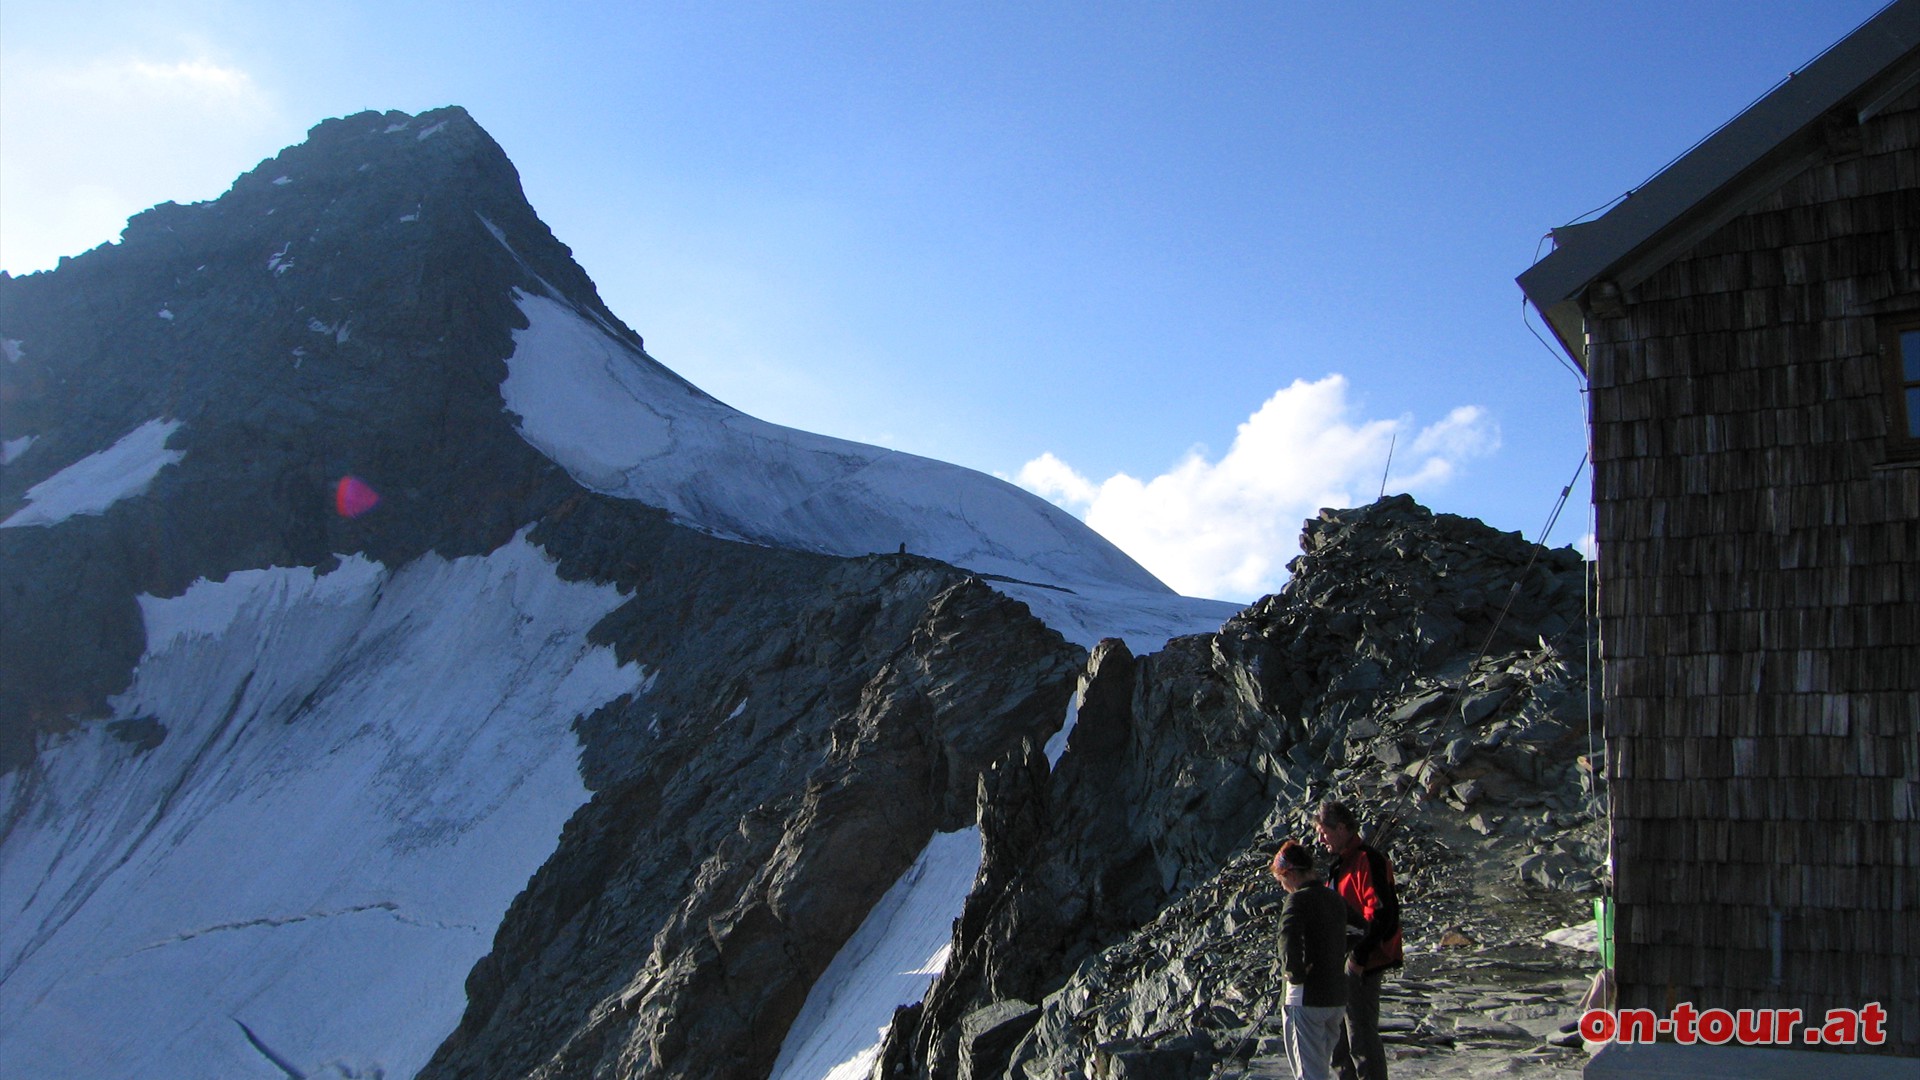 Nach dem Aufstieg ber den Felsgrat folgt die Erzherzog-Johann Htte auf der Adlersruhe. Es ist die hchstgelegenste Berghtte sterreichs und zugleich auch der gesamten Ostalpen. 